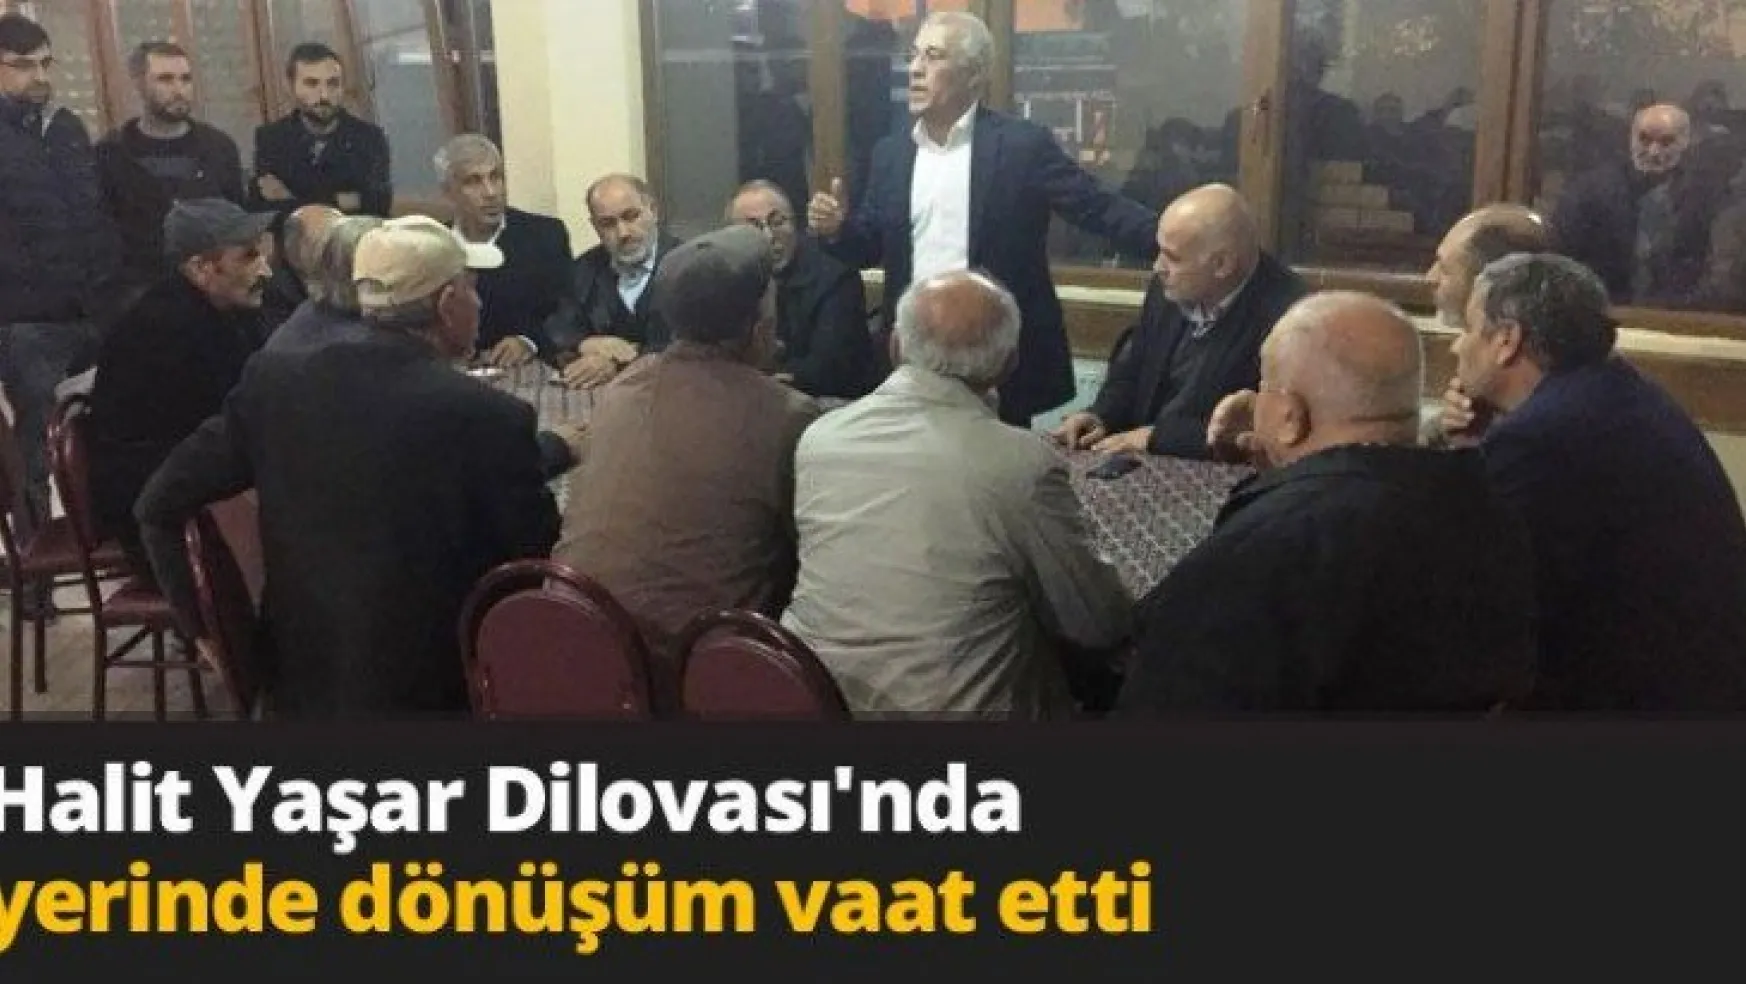 Halit Yaşar Dilovası'nda yerinde dönüşüm vaat etti